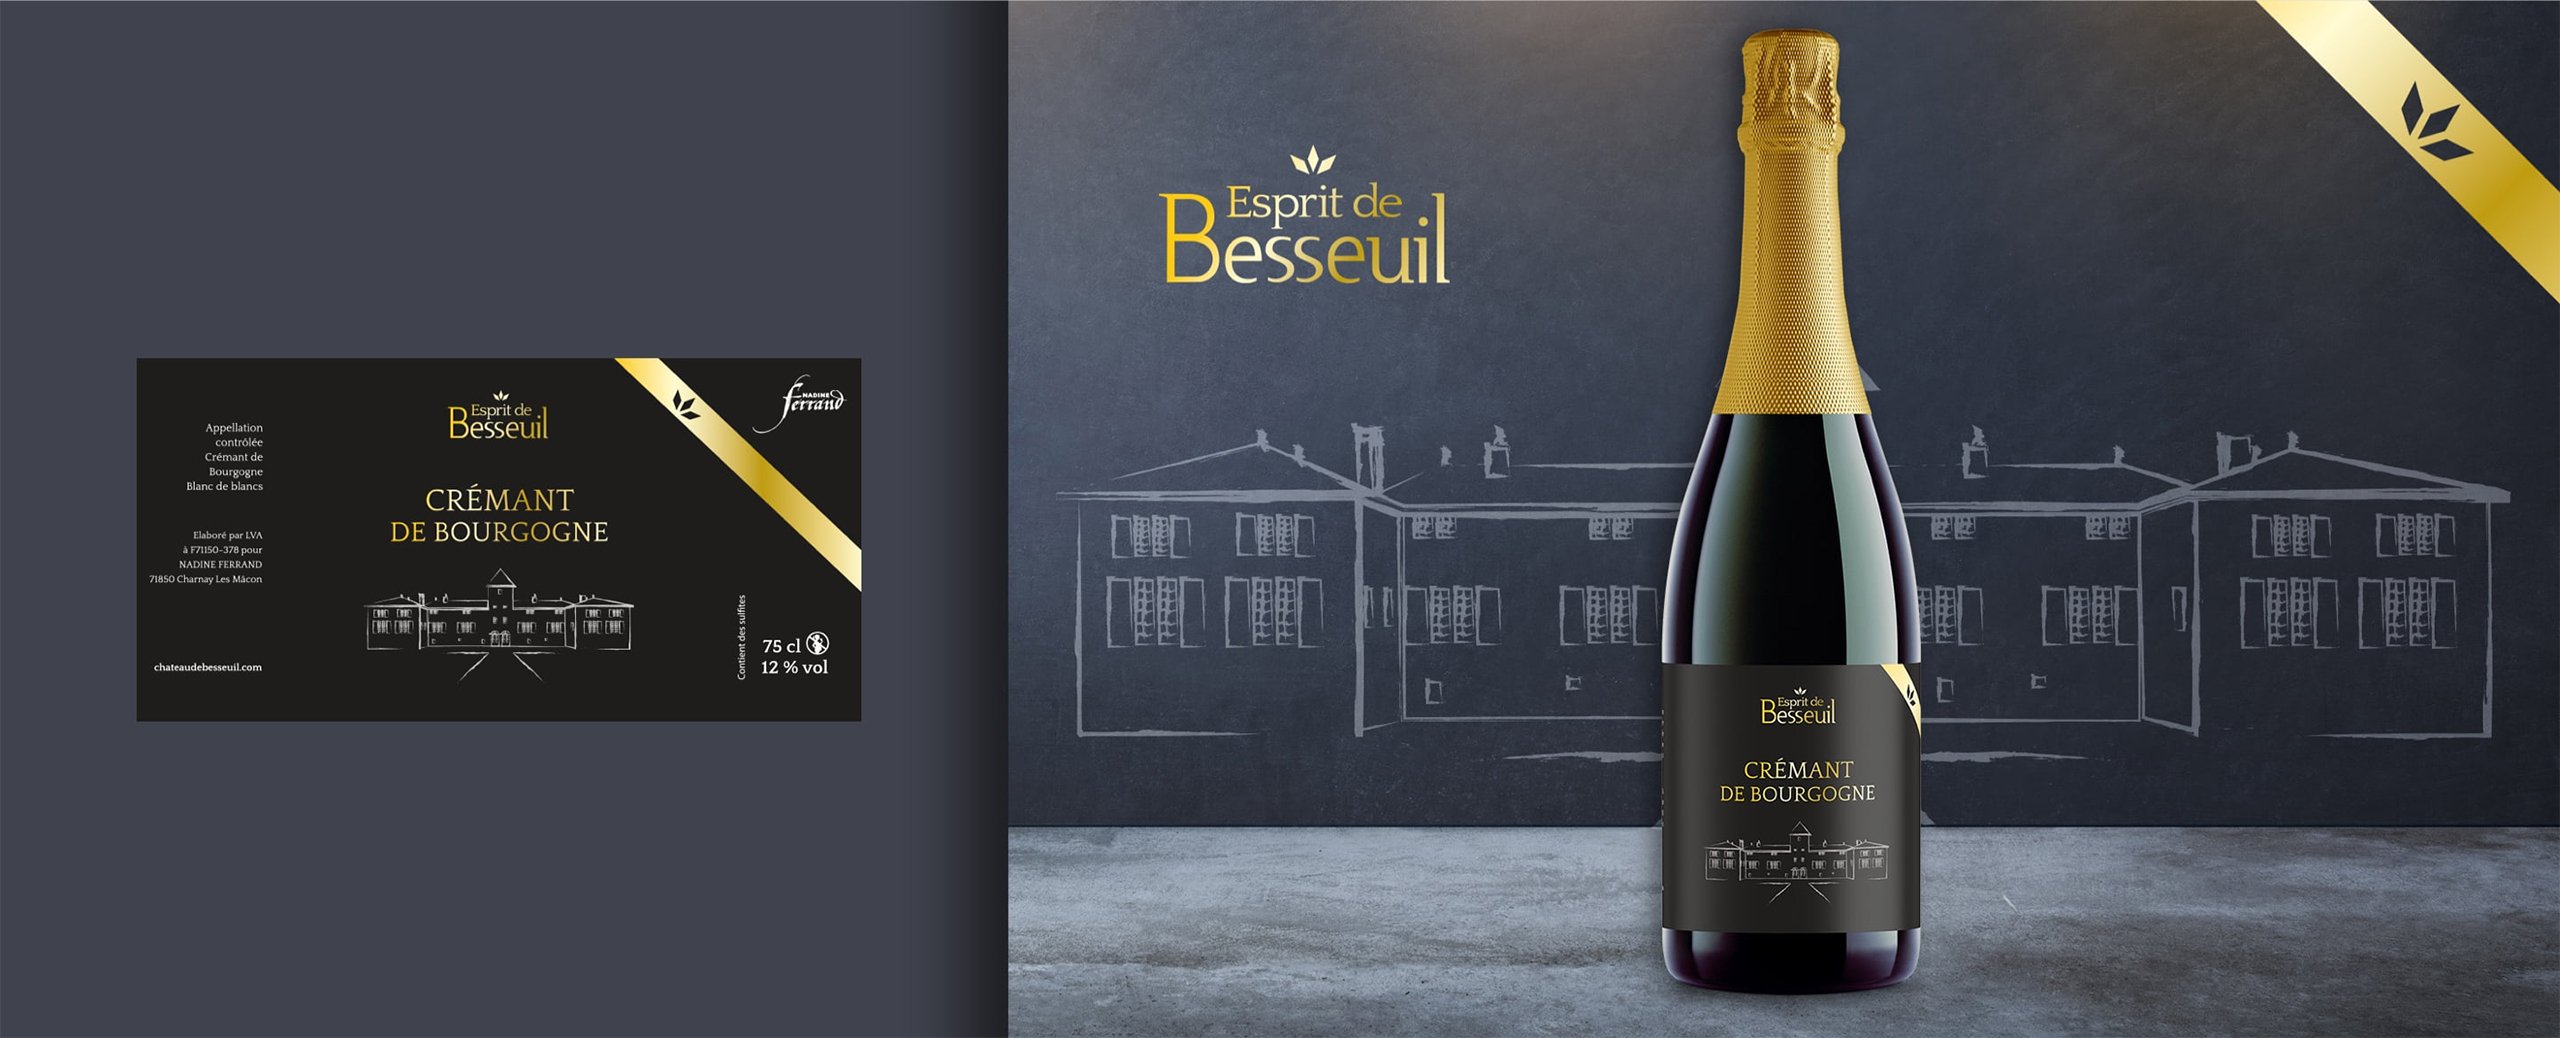 Habefast Study Case Chateau De Besseuil Design Wine Bottle Label Esprit De Besseuil Cremant De Bourgogne